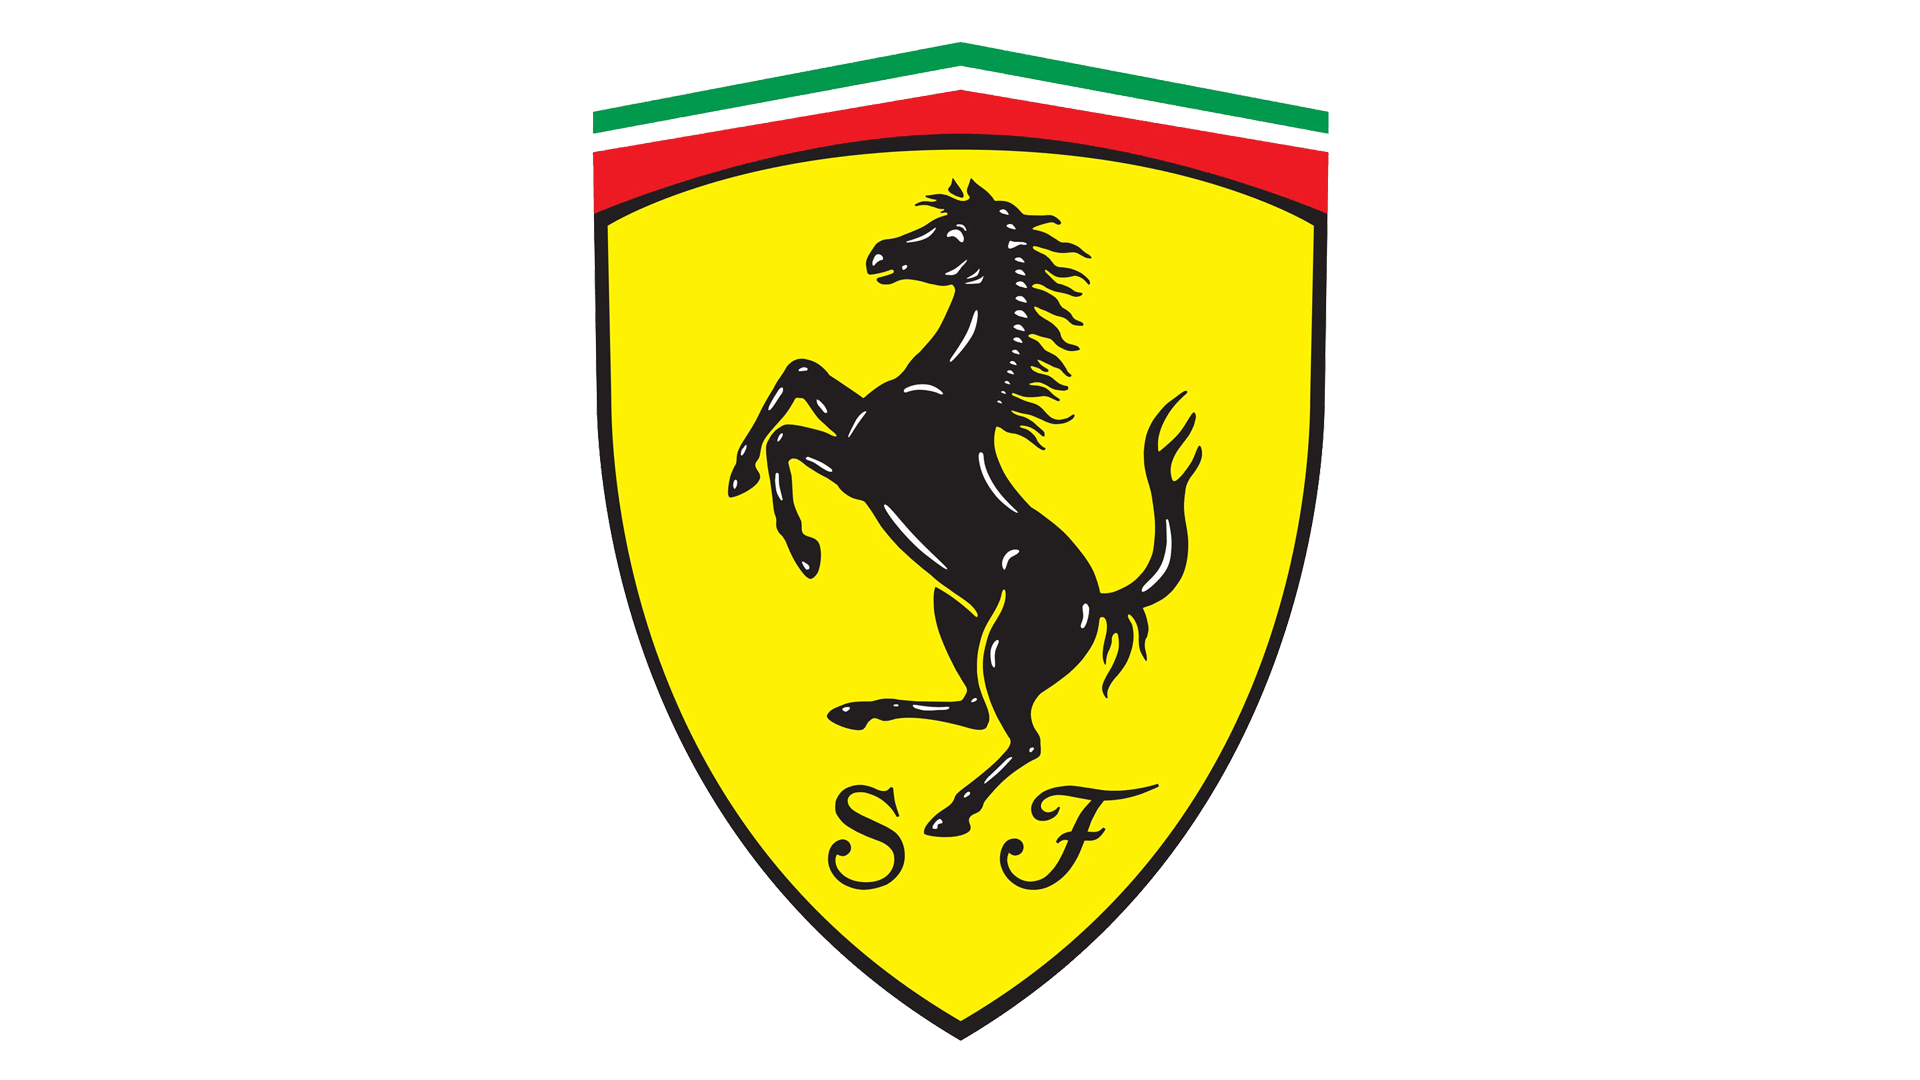 Ferrari emblem logo transparent png